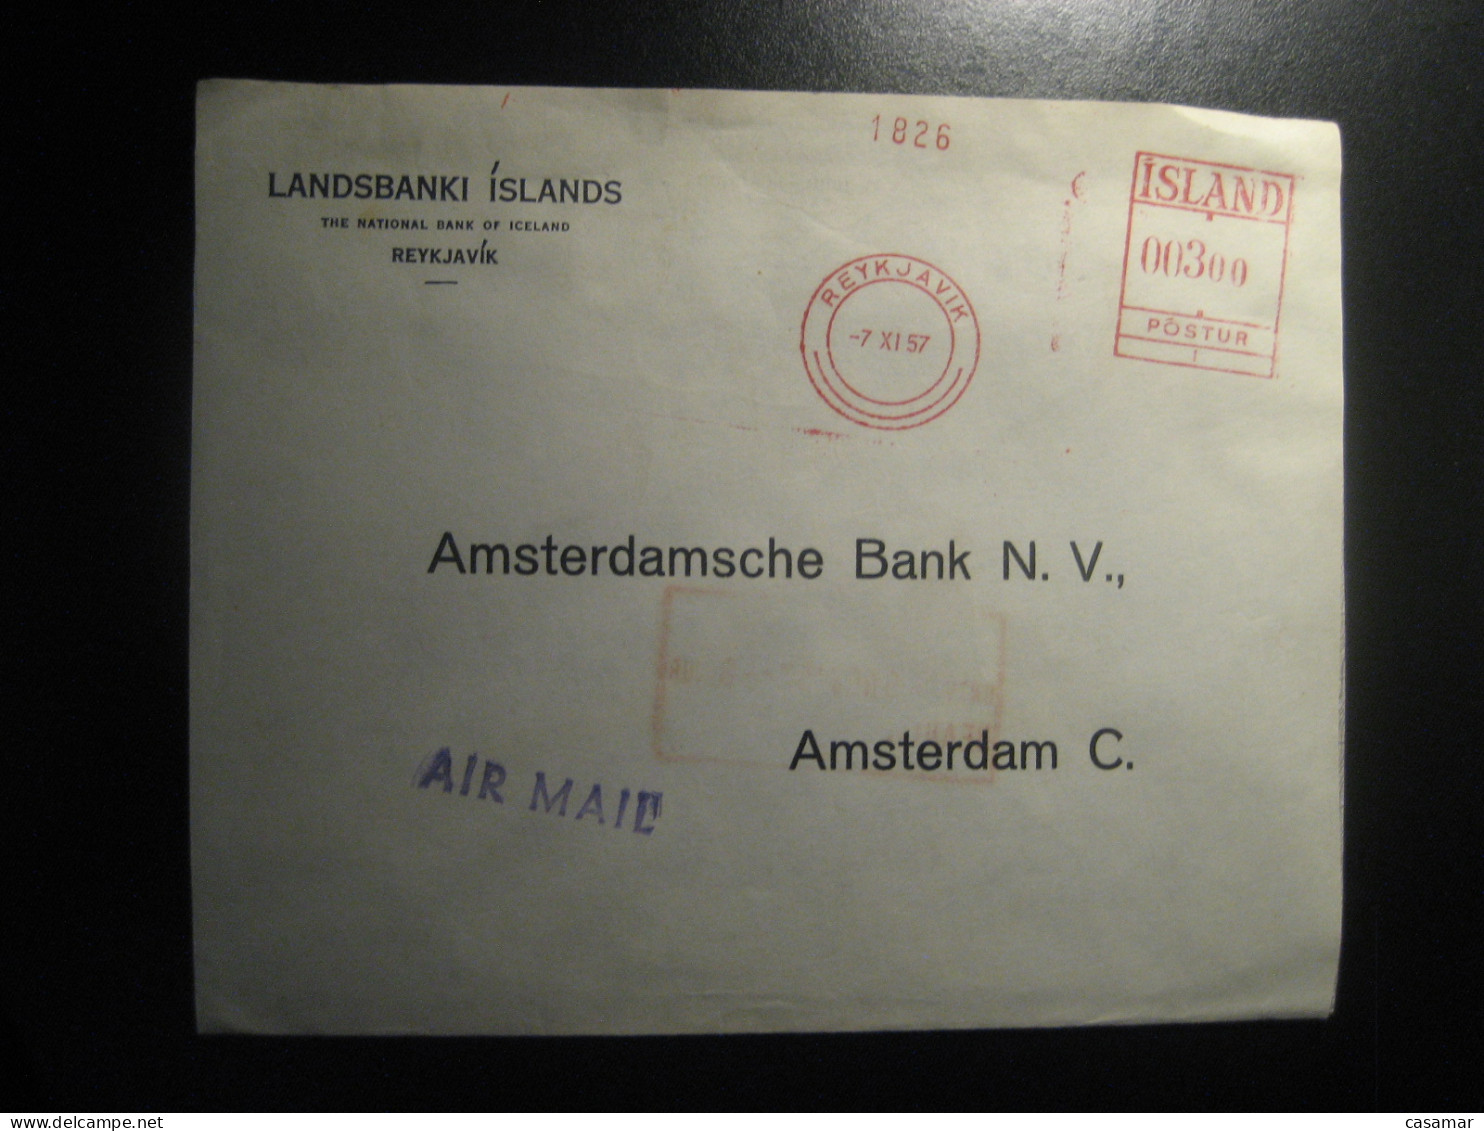 REYKJAVIK 1957 To Amsterdam Netherlands Landsbanki Islands Air Meter Mail Cancel Cover ICELAND - Briefe U. Dokumente